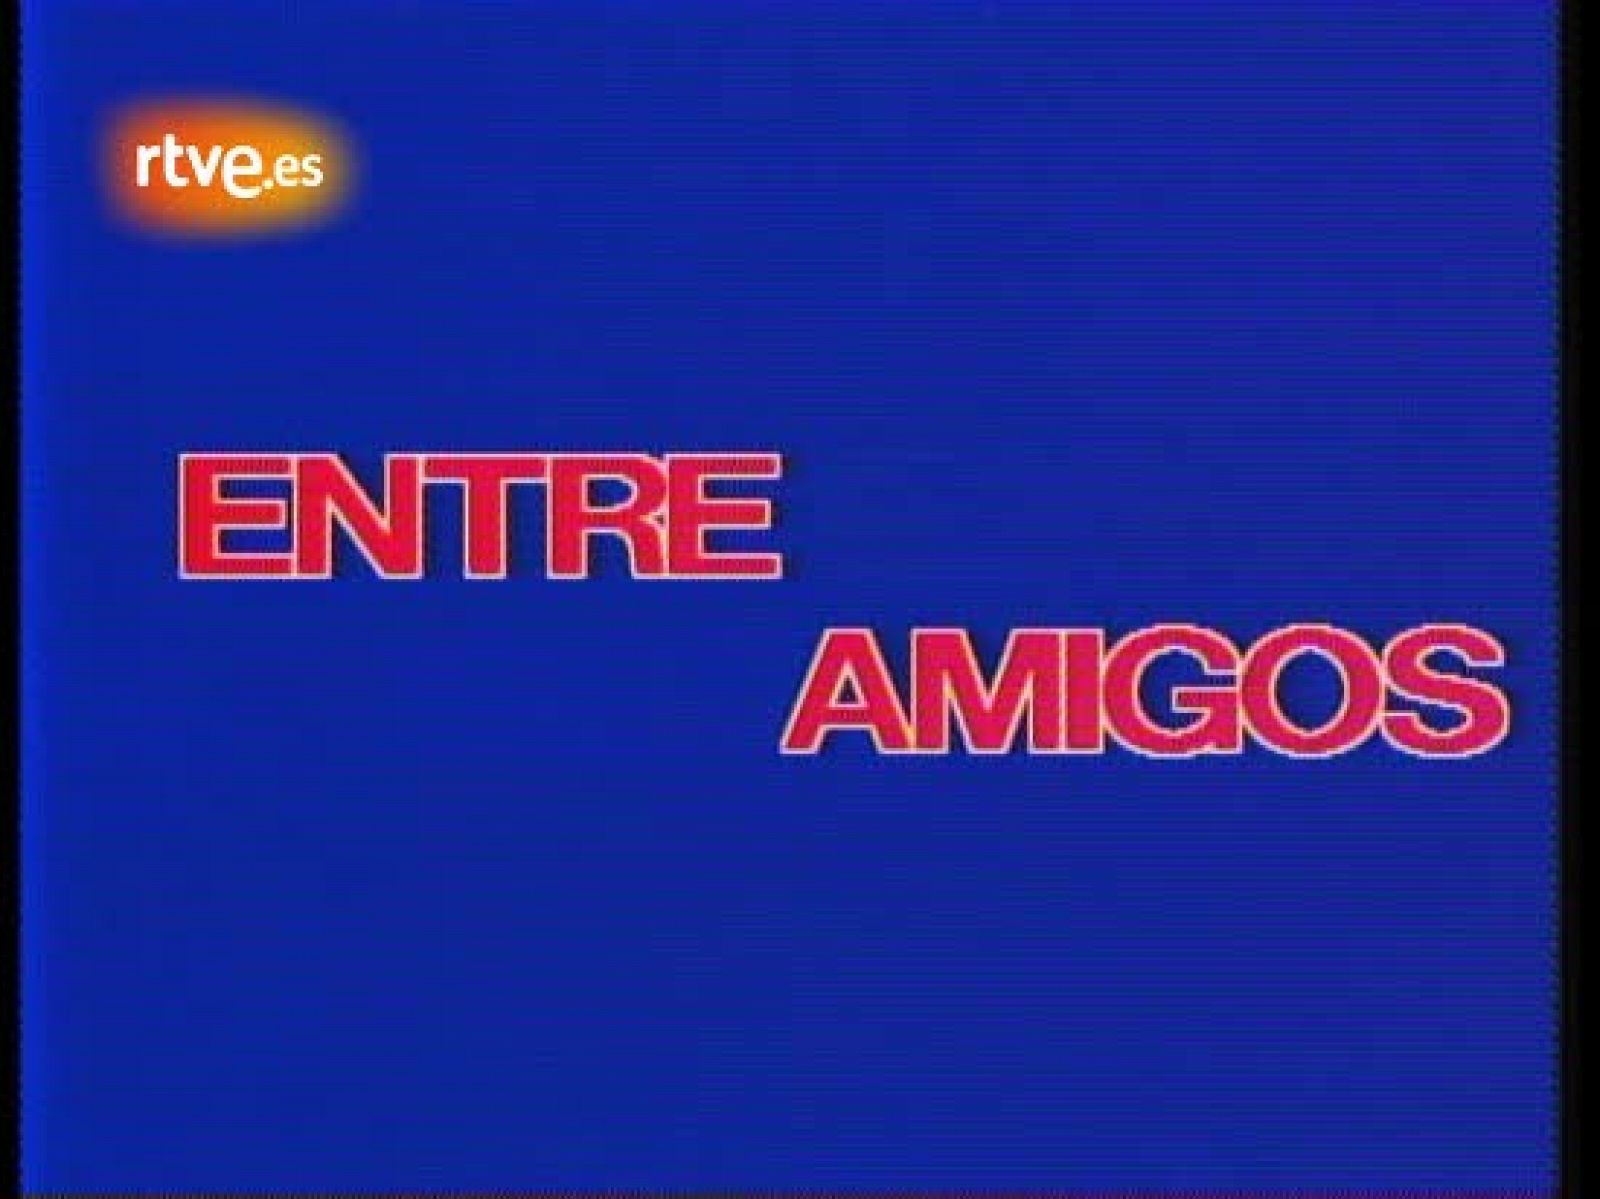 Mecano: Actuación en 'Entre amigos' 1985